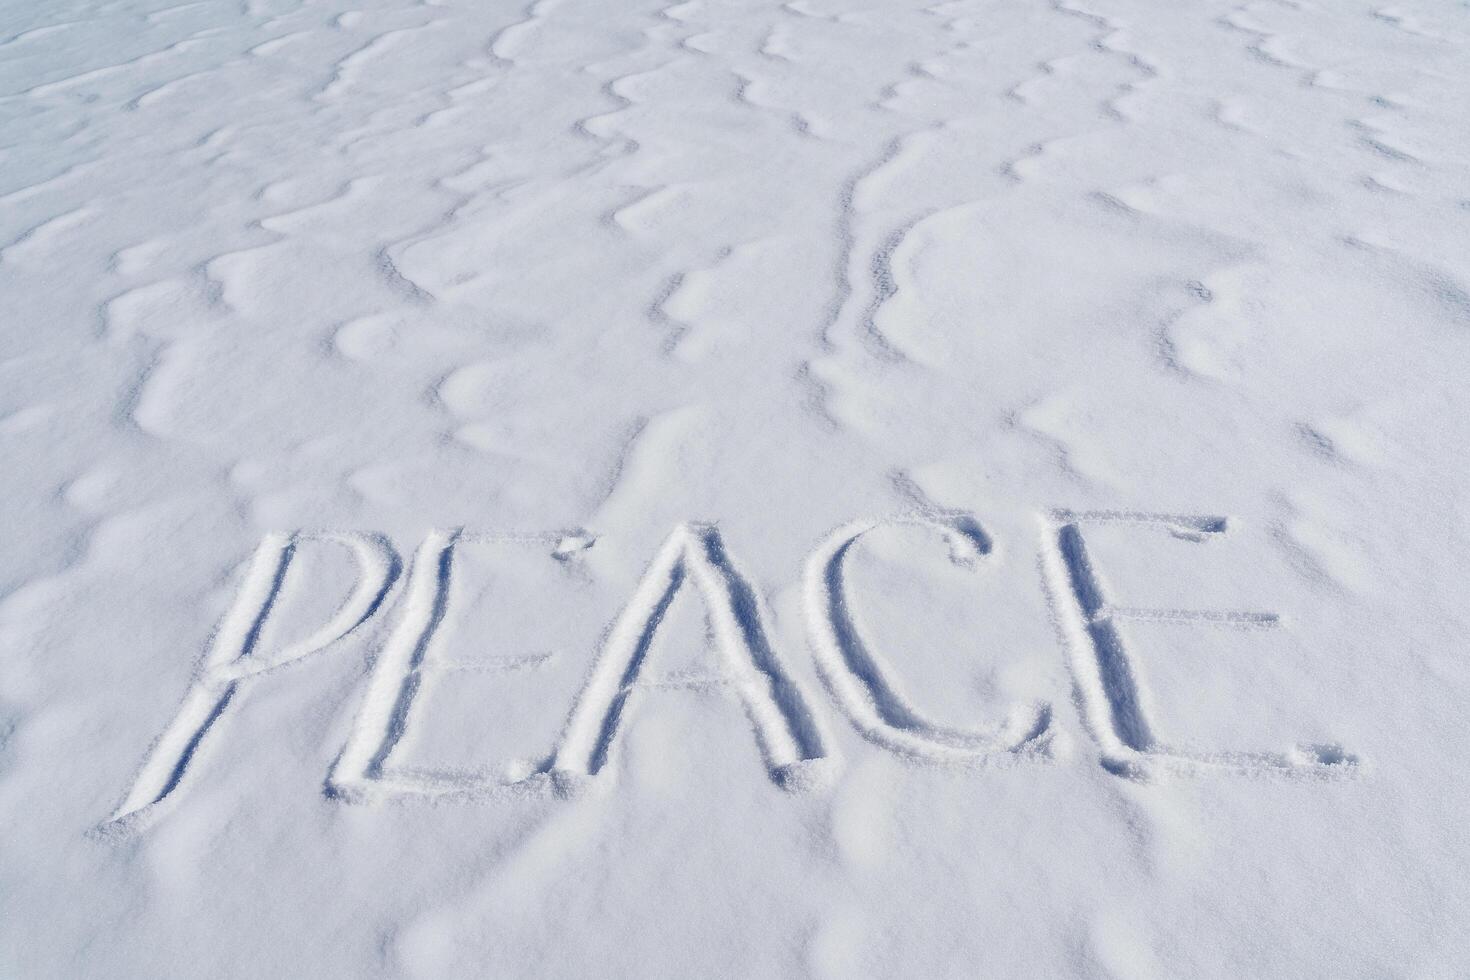 el palabra paz es escrito en el nieve. letras vocación para el unificación de países alrededor el mundo. el concepto de pacífico coexistencia de el población. texto a escribir en el nieve. foto